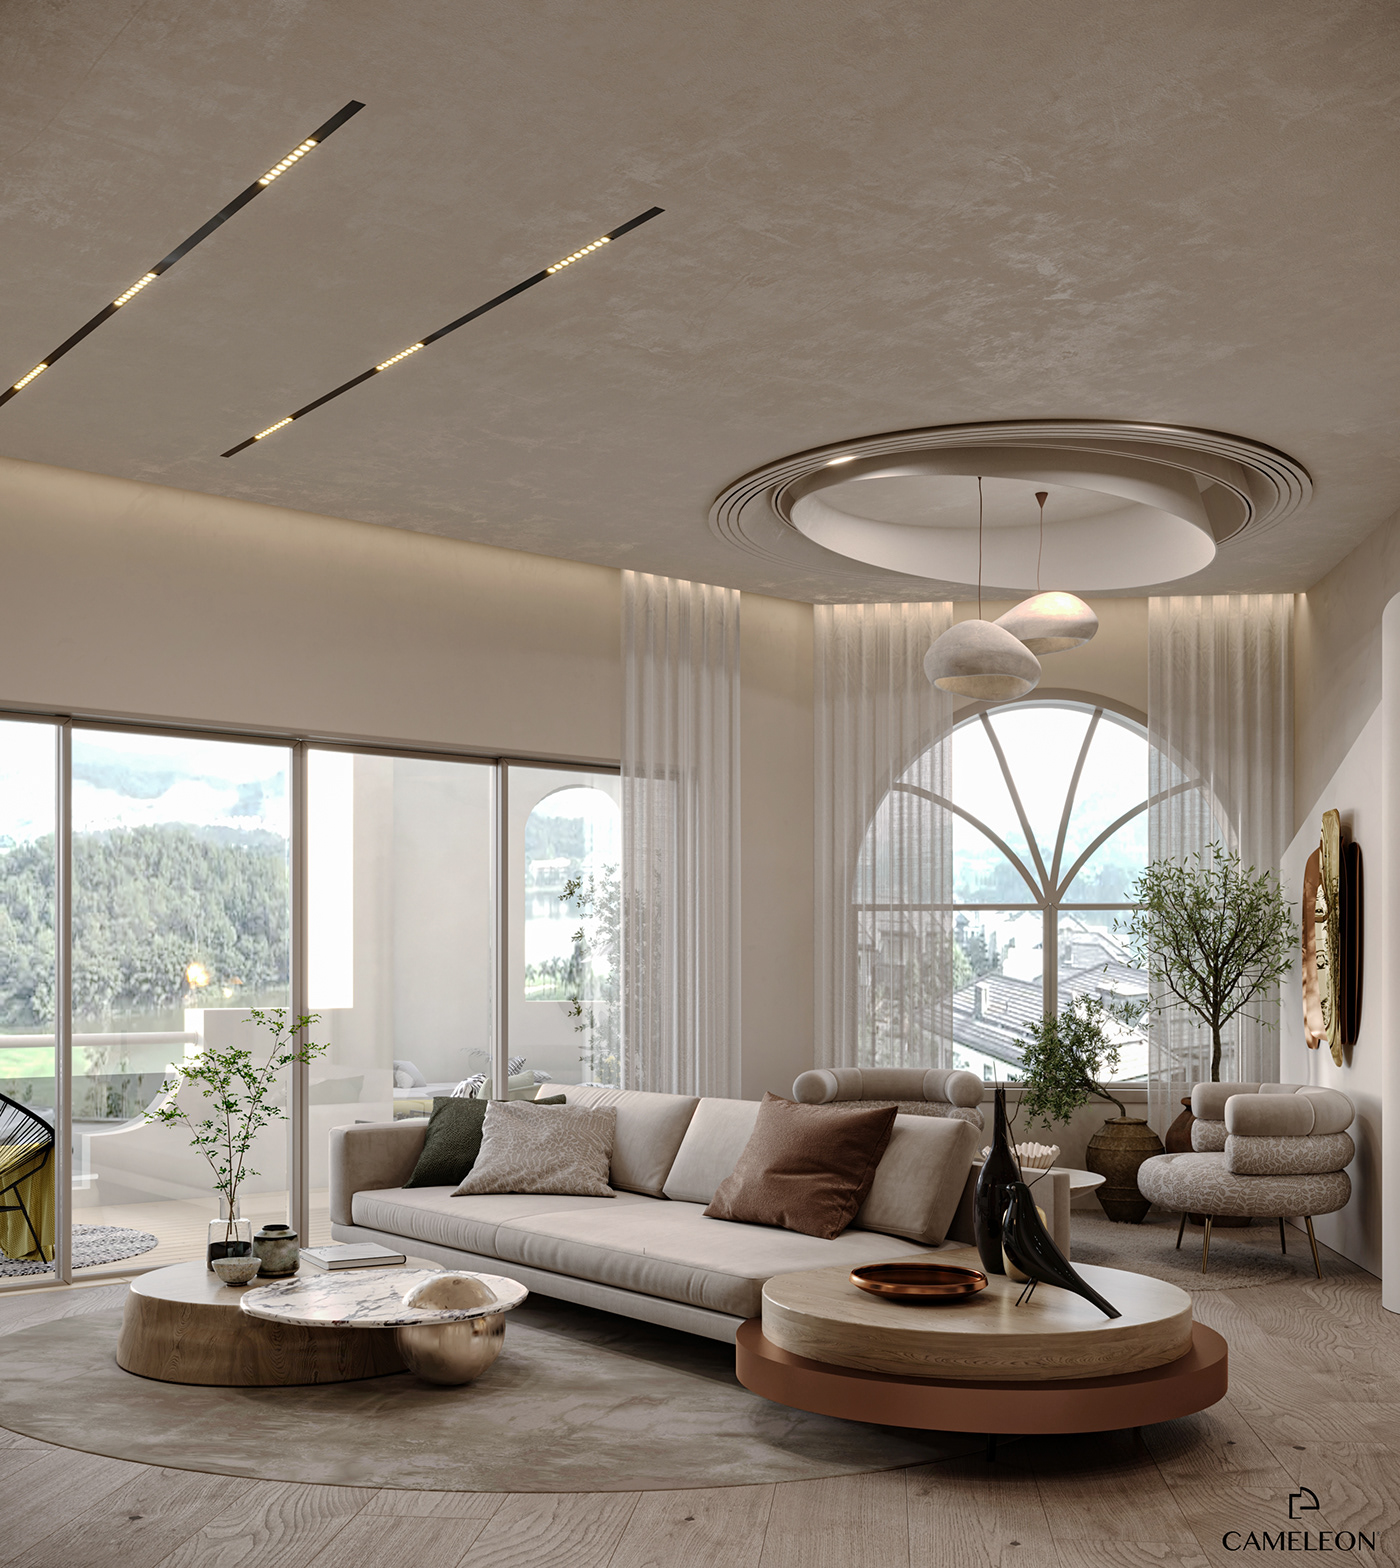 dubai reception interior design  corona render  modern 3ds max